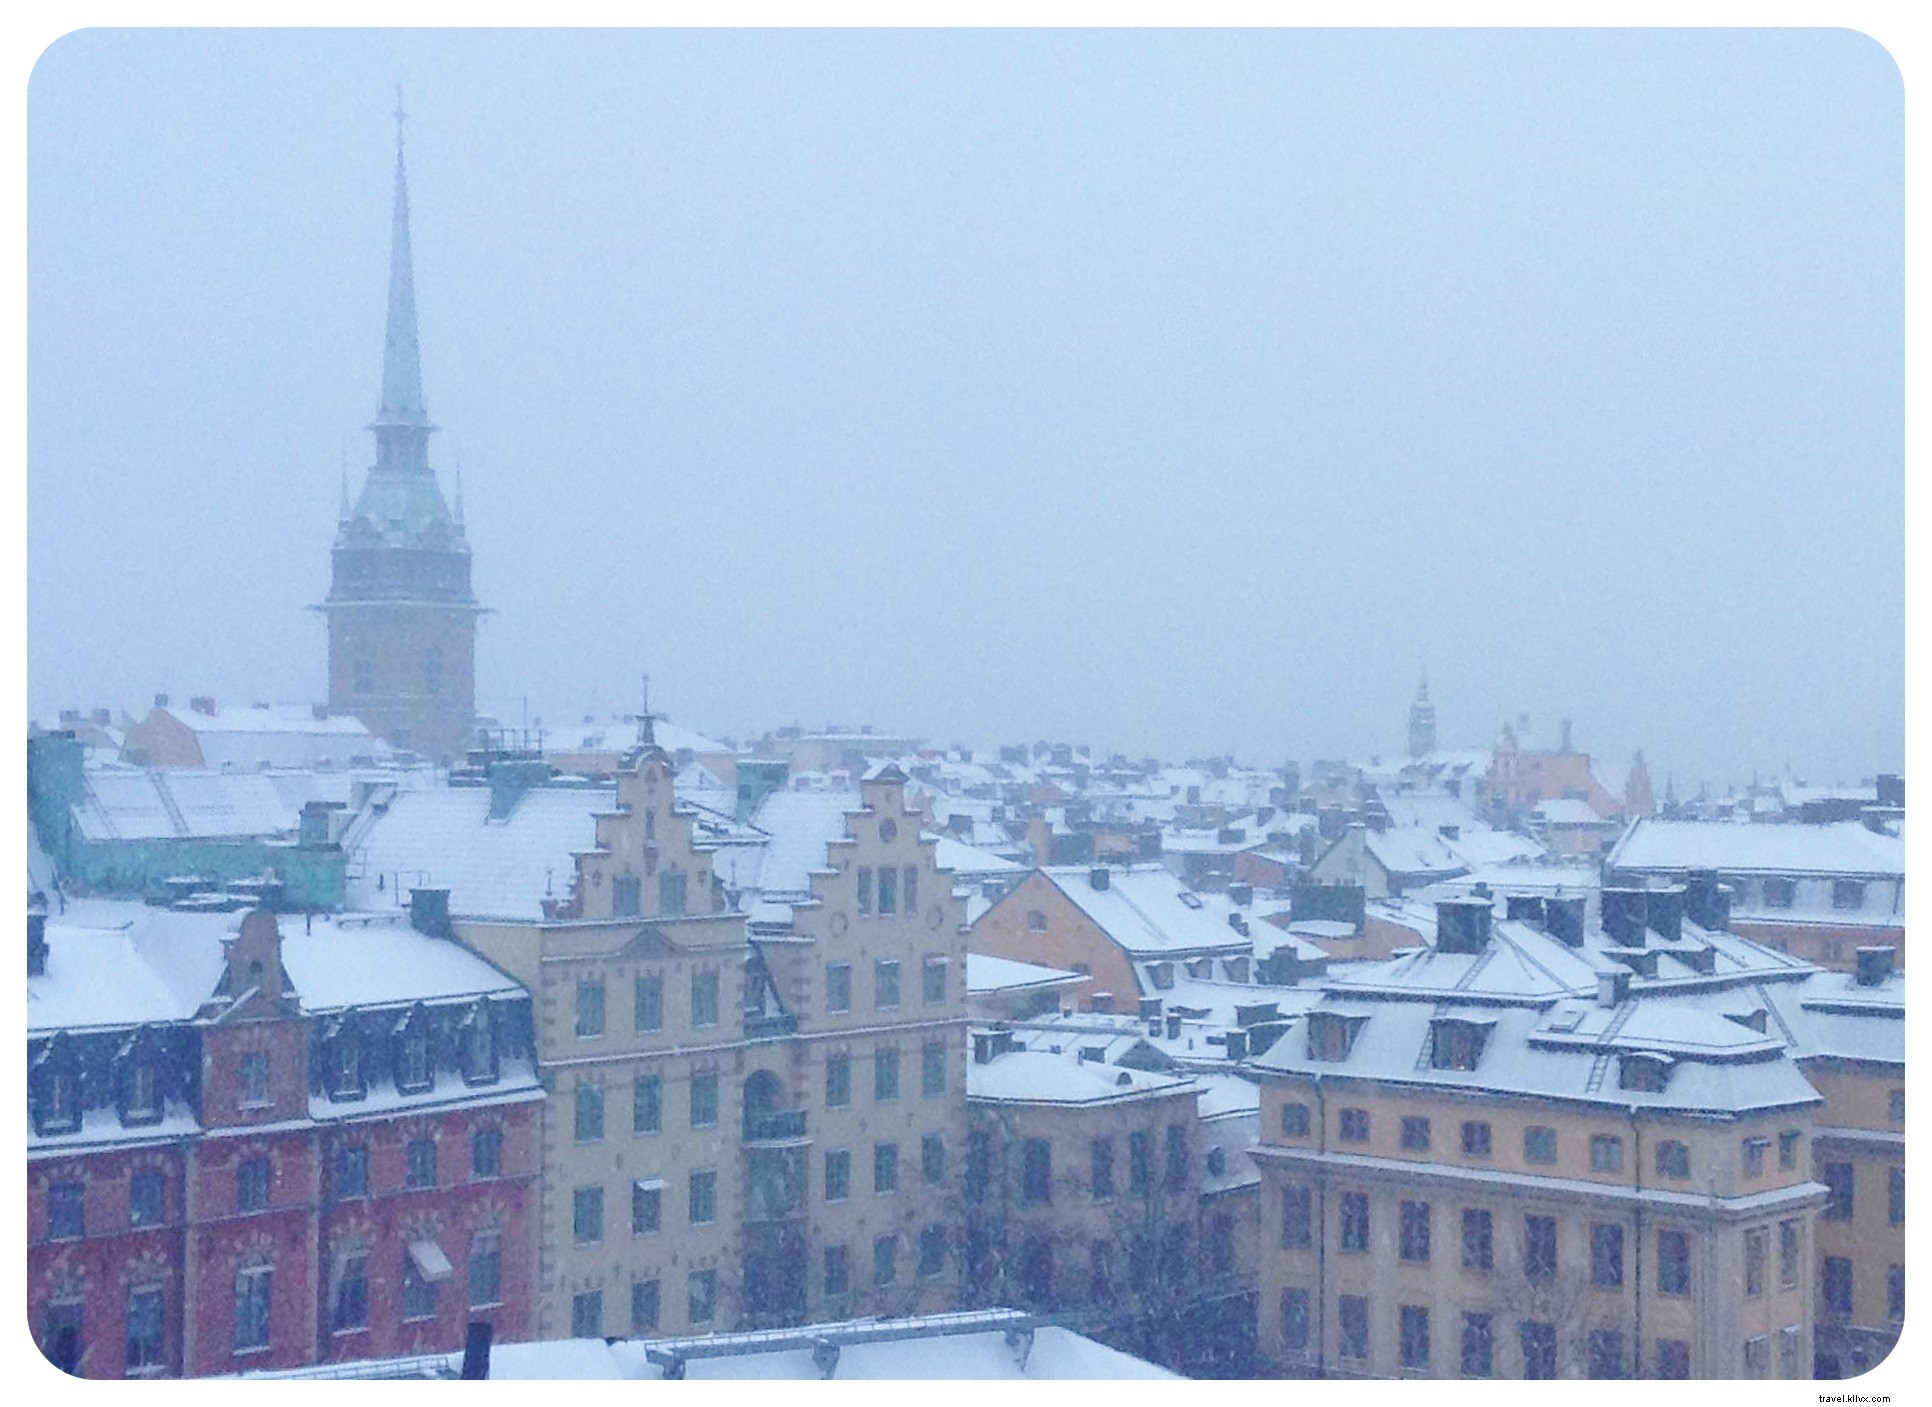 El fin de semana de invierno perfecto en Estocolmo